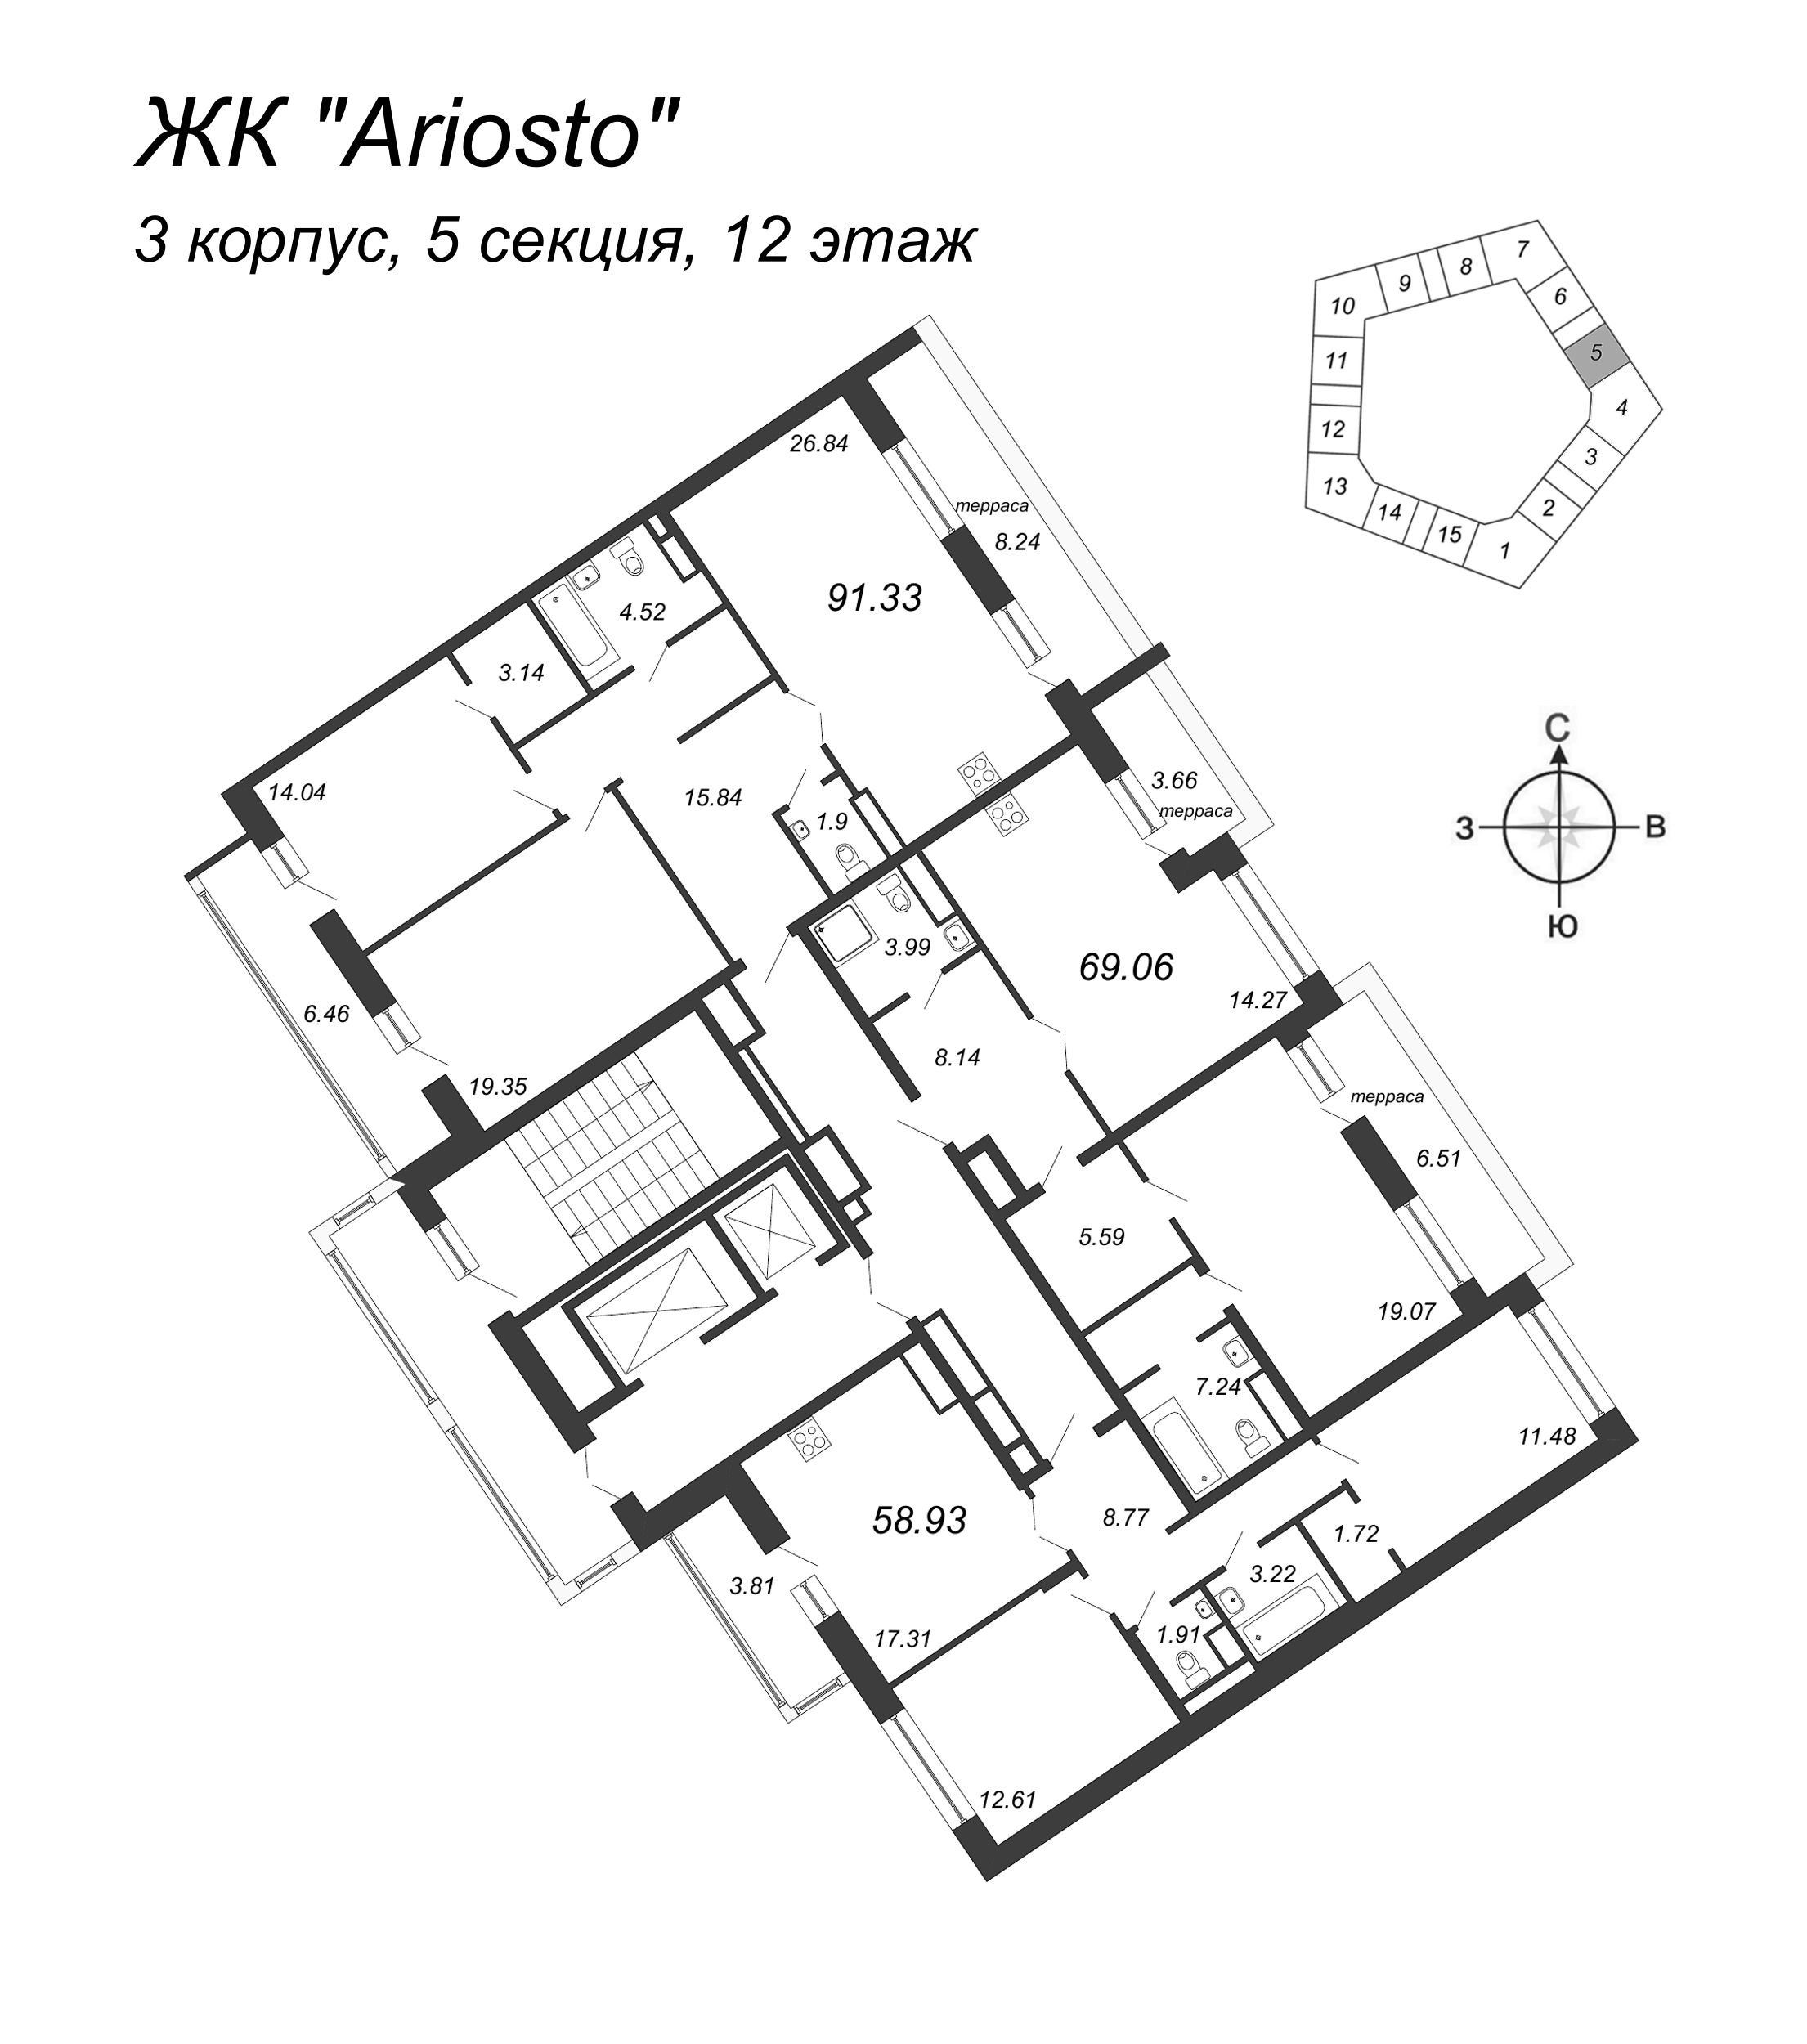 2-комнатная (Евро) квартира, 69.06 м² в ЖК "Ariosto" - планировка этажа